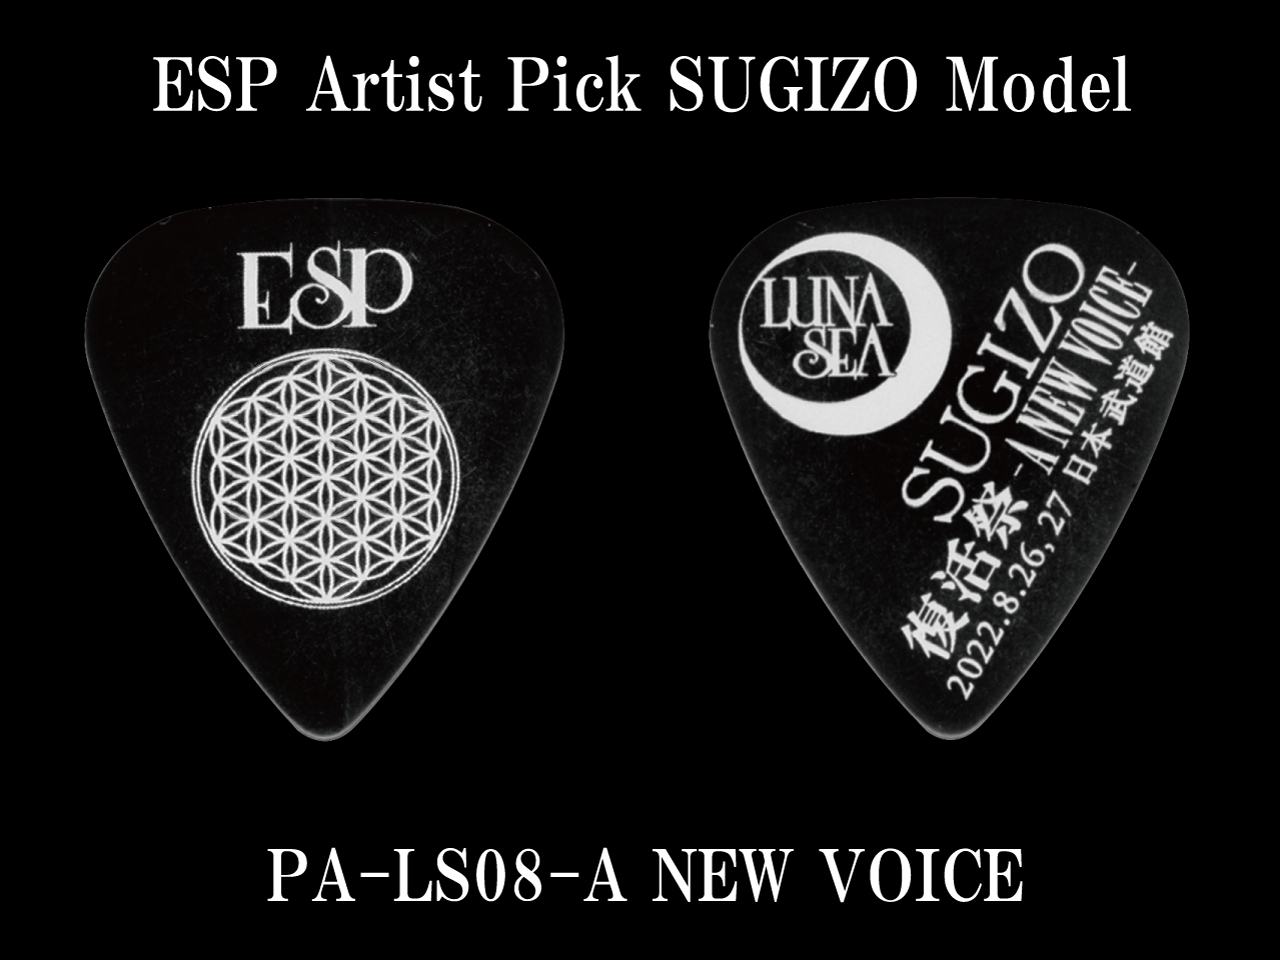 ESP(イーエスピー) Artist Pick Series PA-LS08-A NEW VOICE SUGIZOピック (LUNA SEA/SUGIZOモデル)